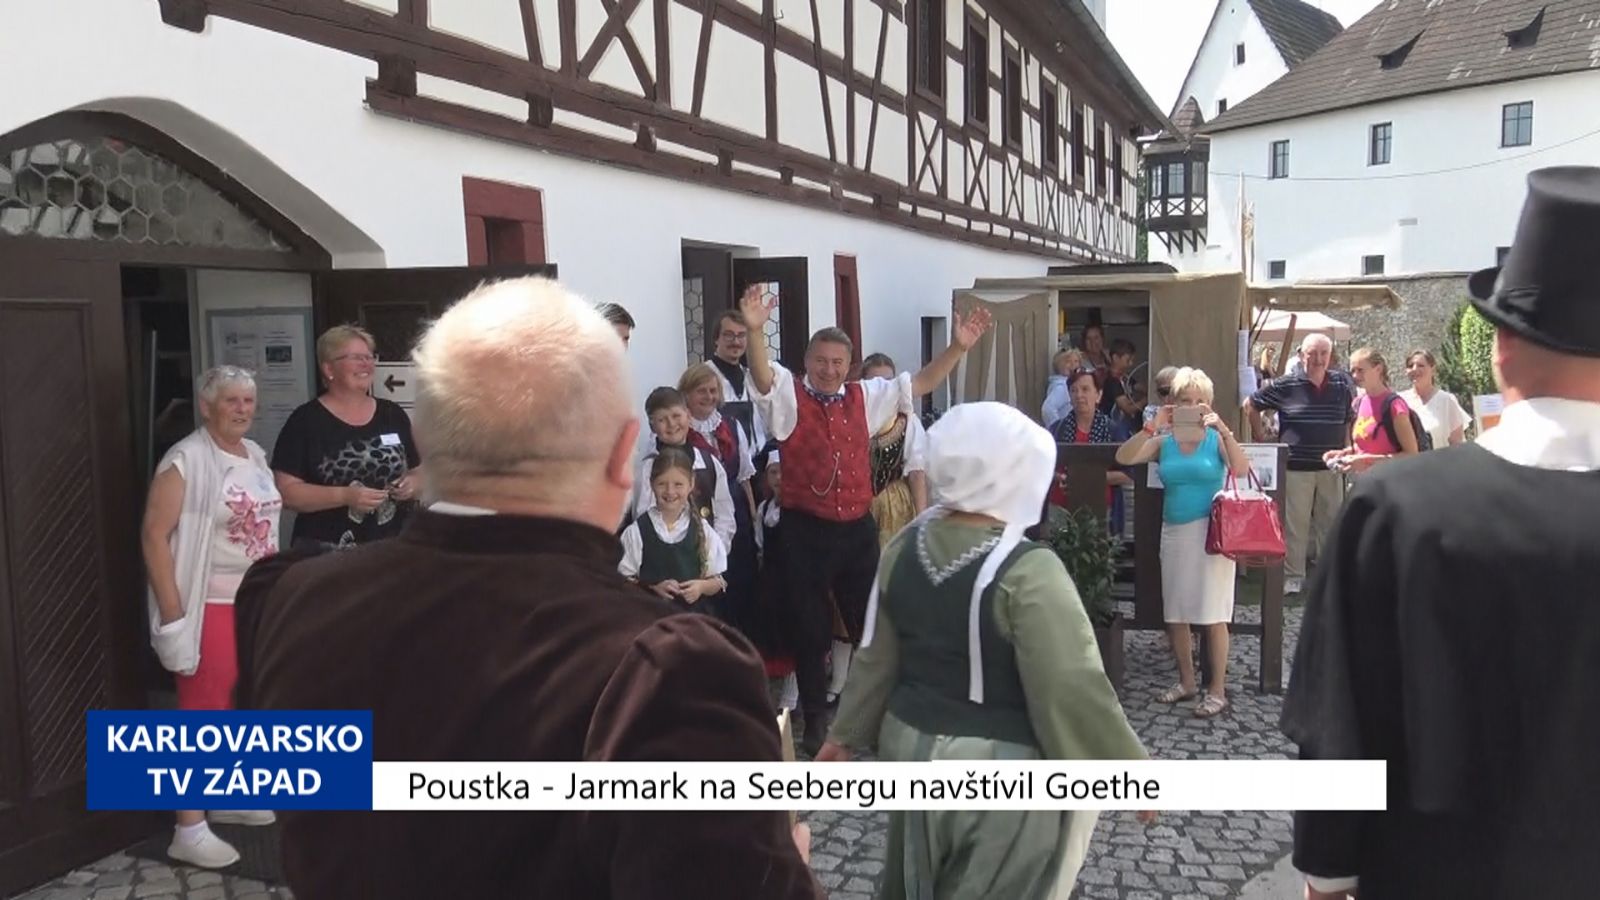 Poustka: Jarmark na Seebergu navštívil Goethe (TV Západ)